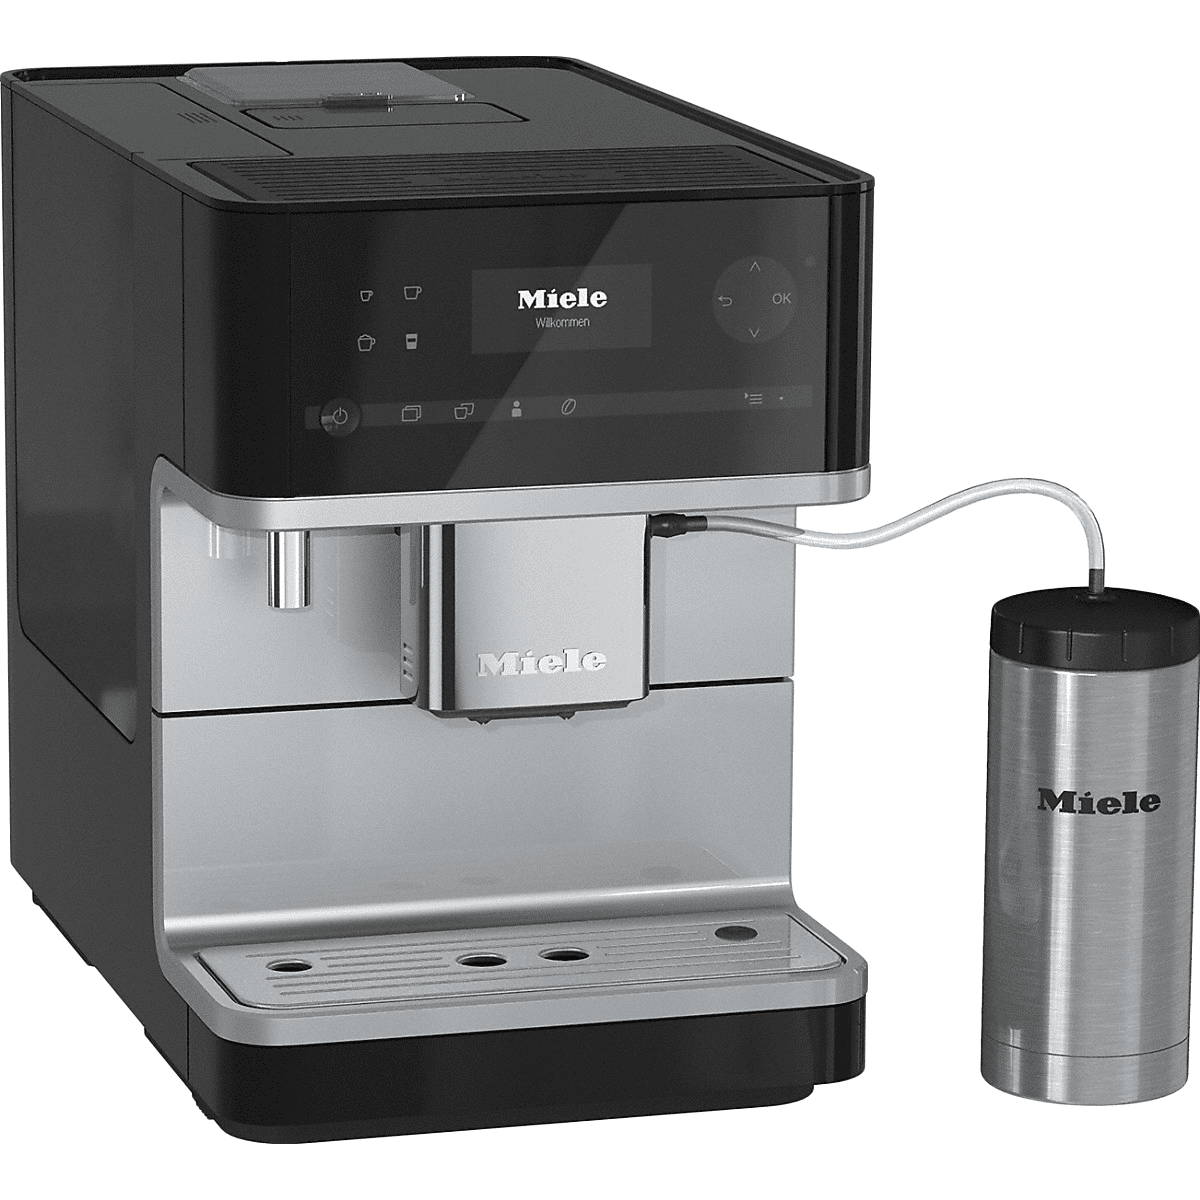 Miele Cm6350 Countertop Espresso Machine